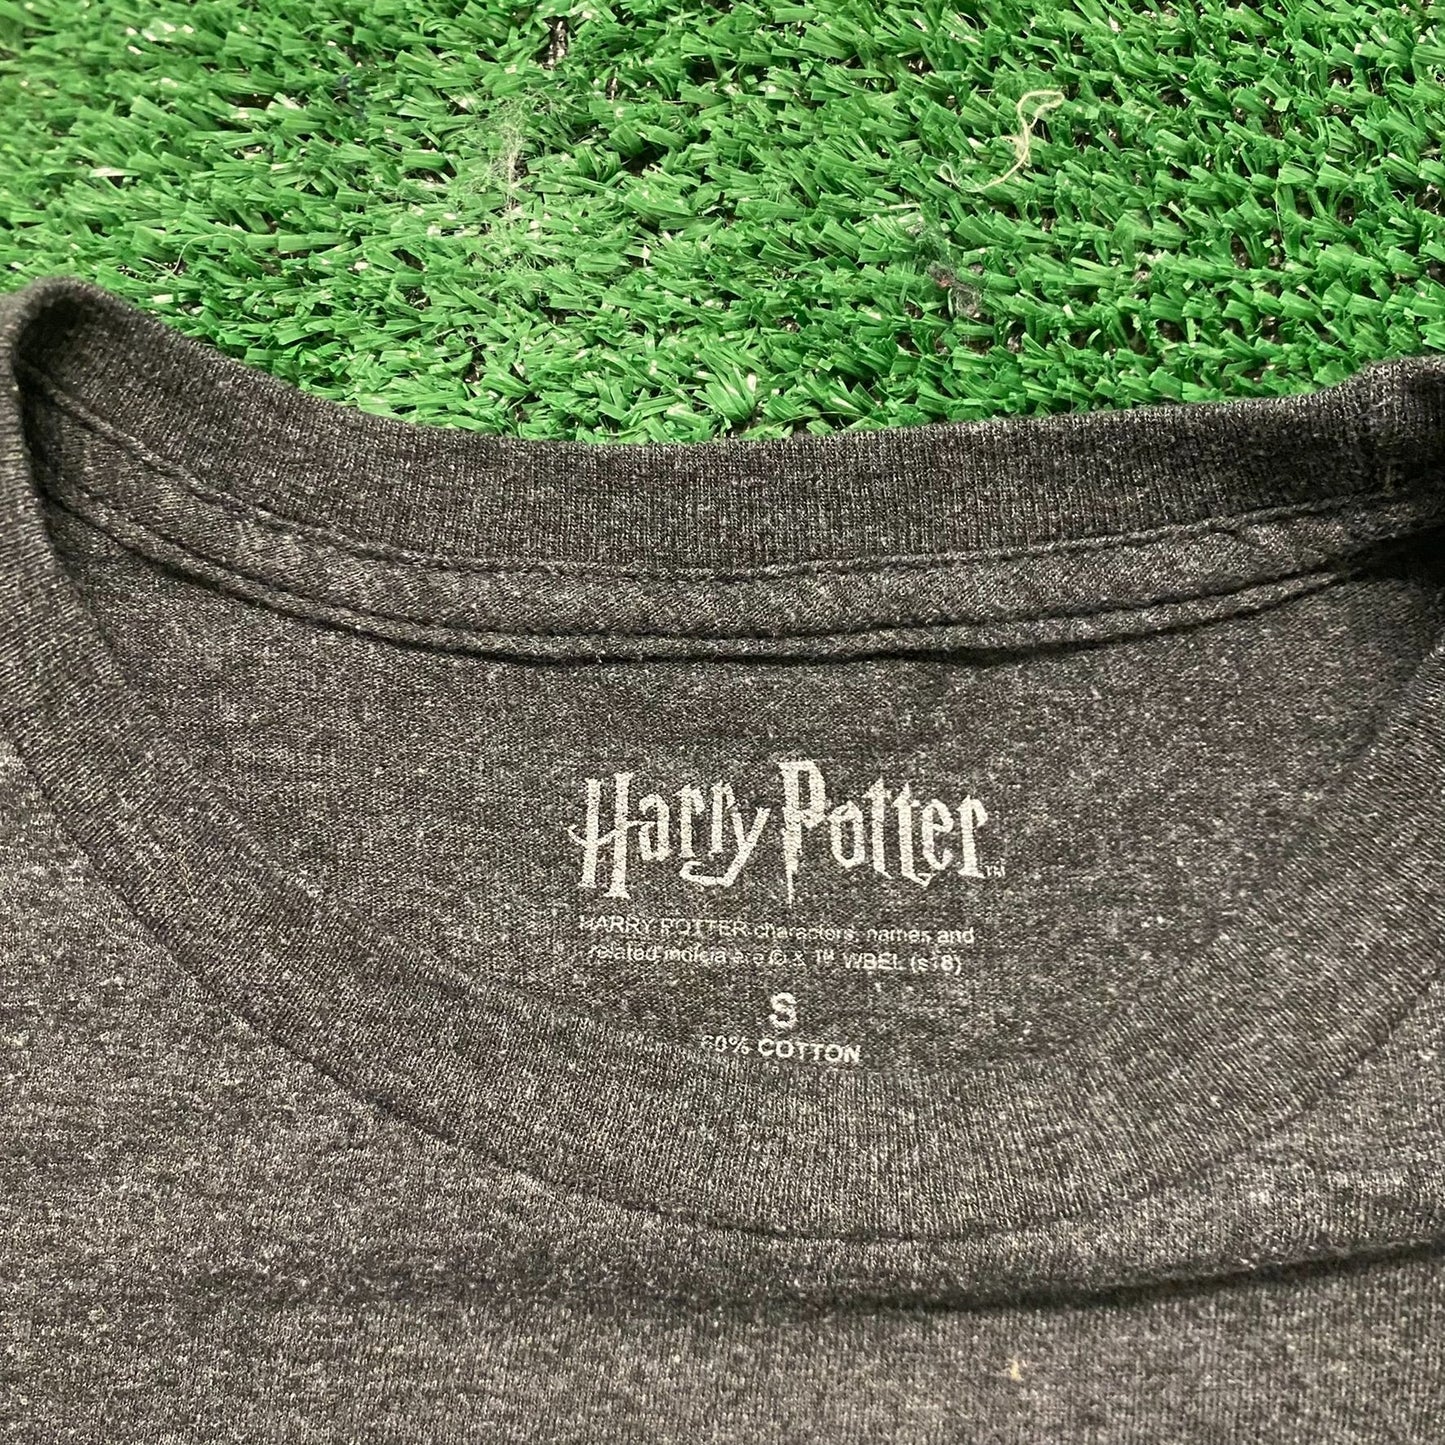 Harry Potter Hogwarts Vintage Movie T-Shirt